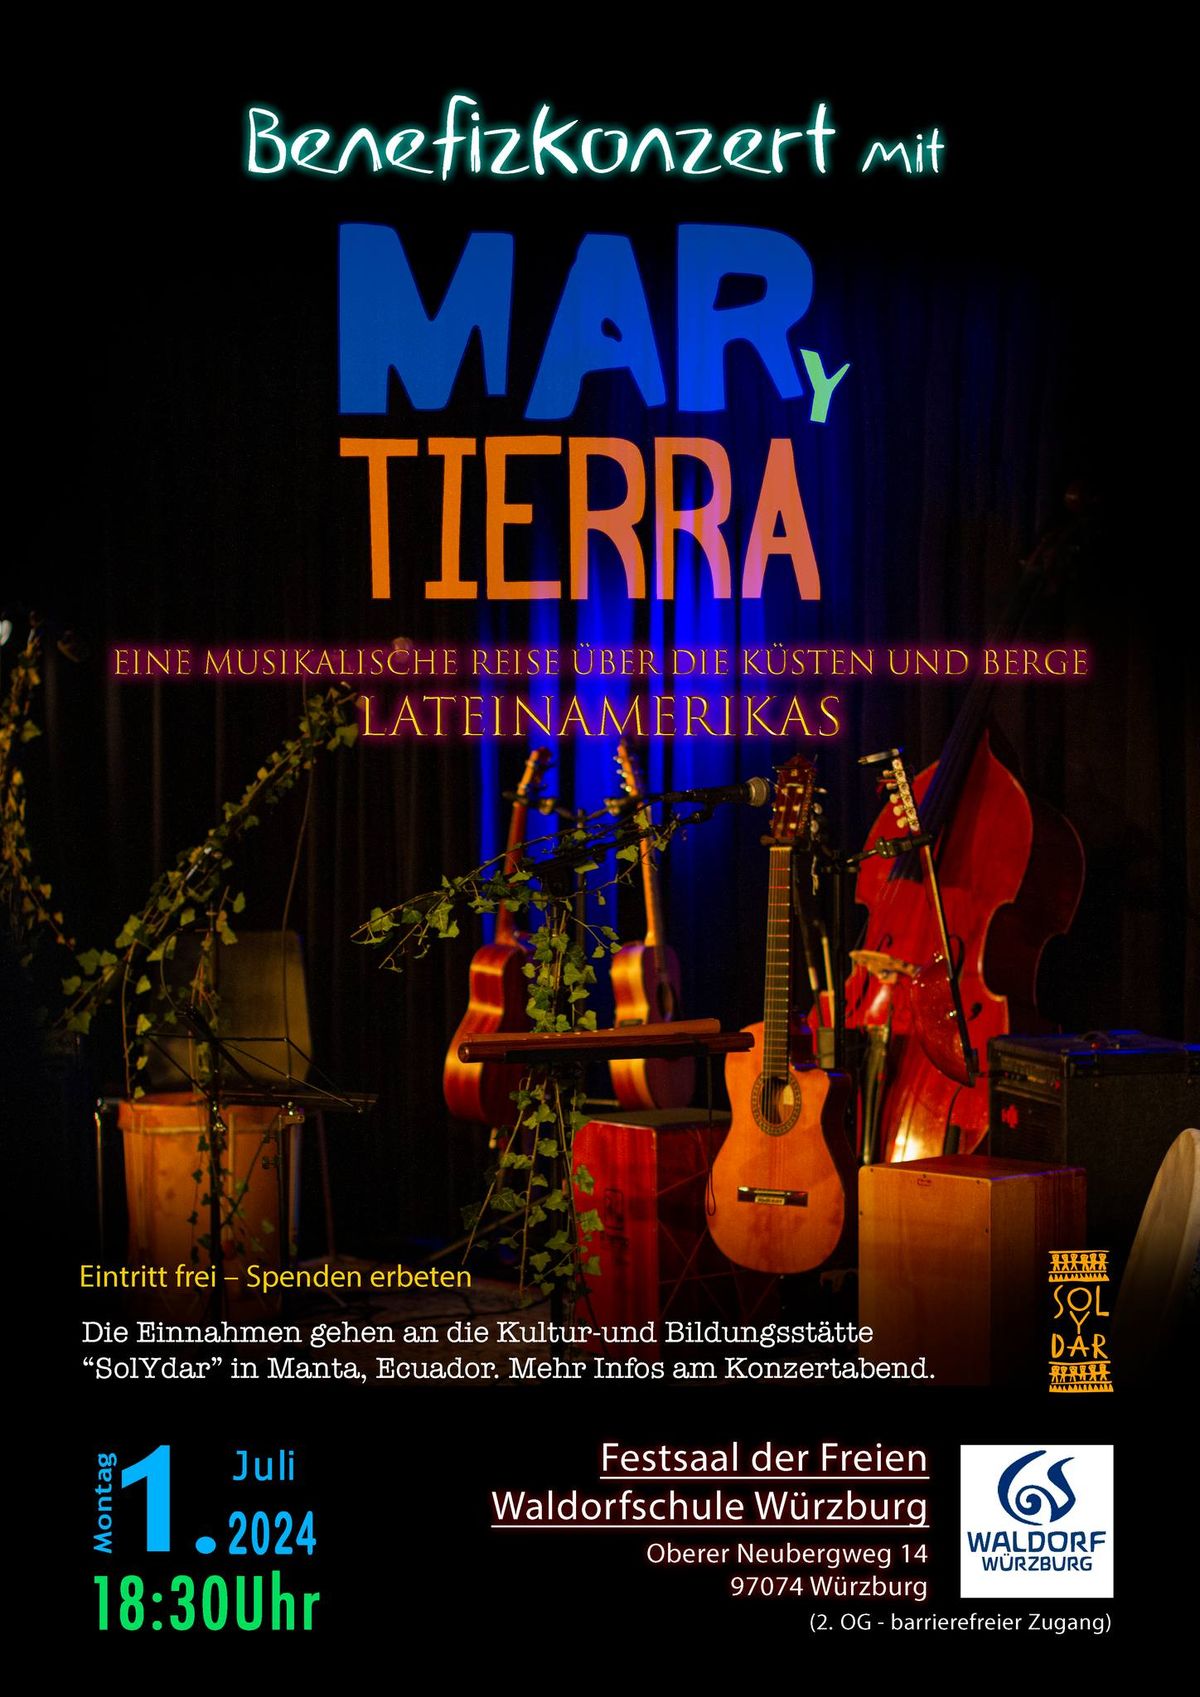 Benefizkonzert mit "Mar y Tierra" - lateinamerikanische Musik 